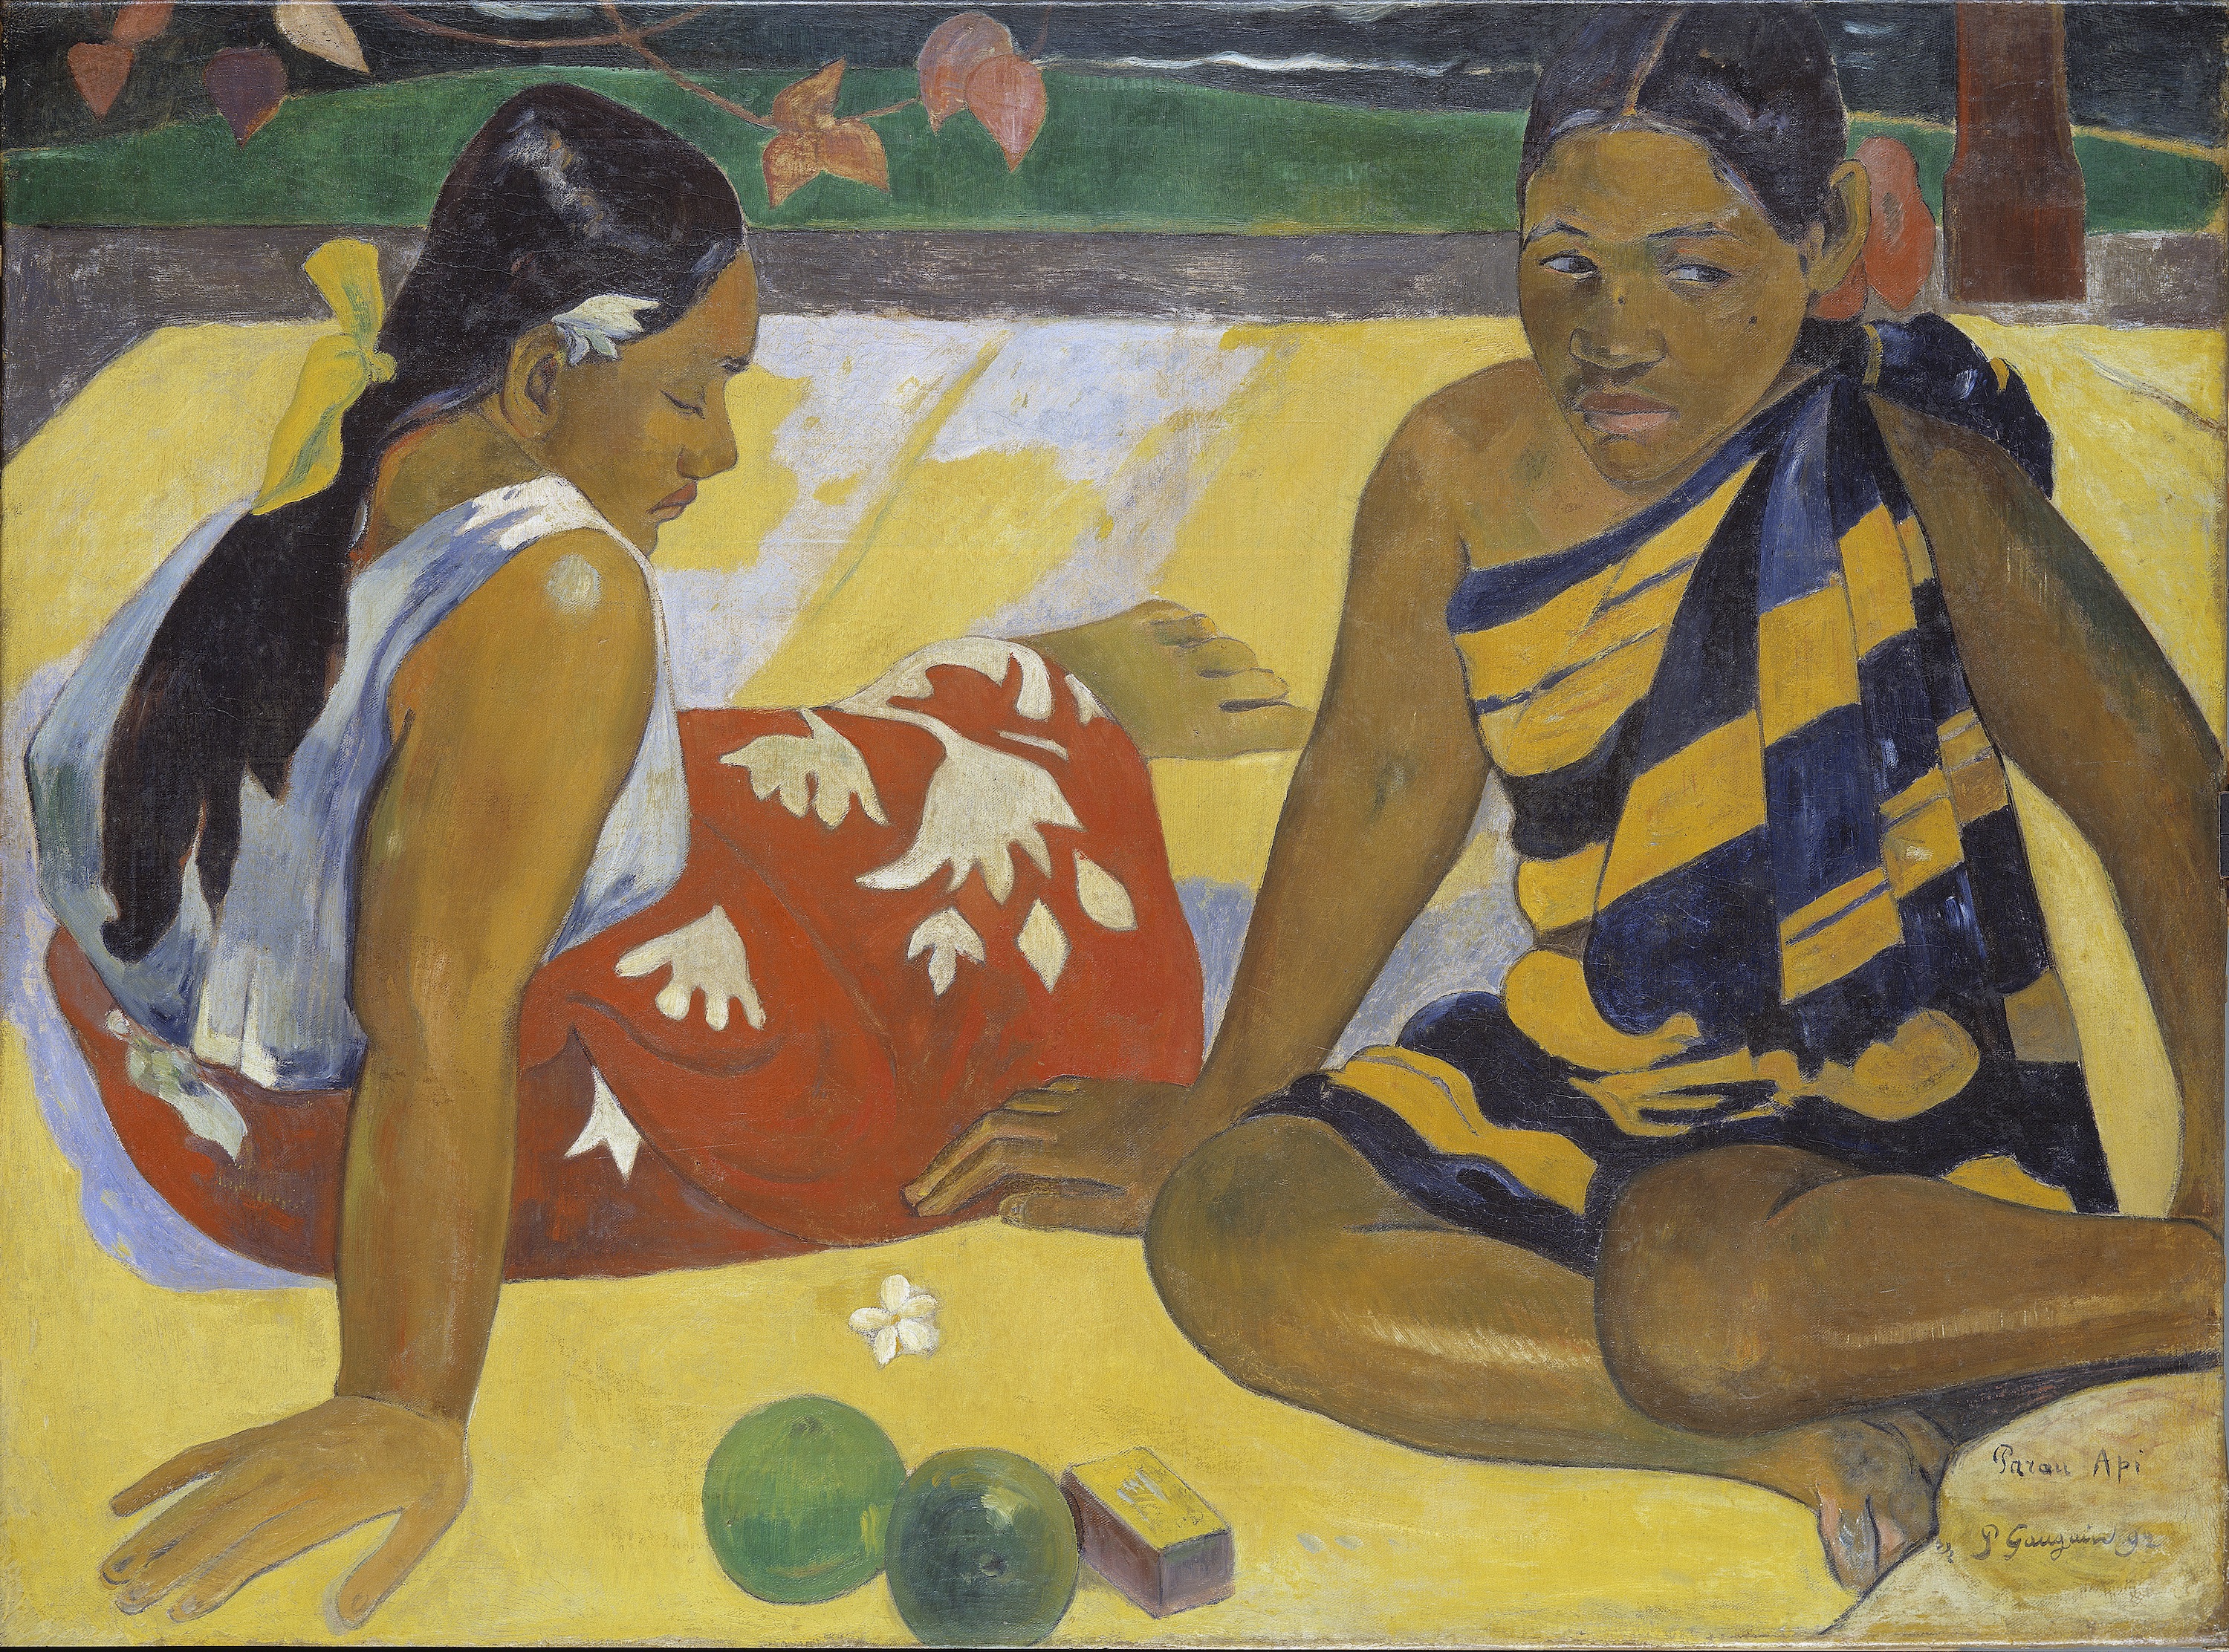 زنان تاهیتی.چه خبر by Paul Gauguin - ۱۸۹۲ - ۹۲ × ۶۷ cm 